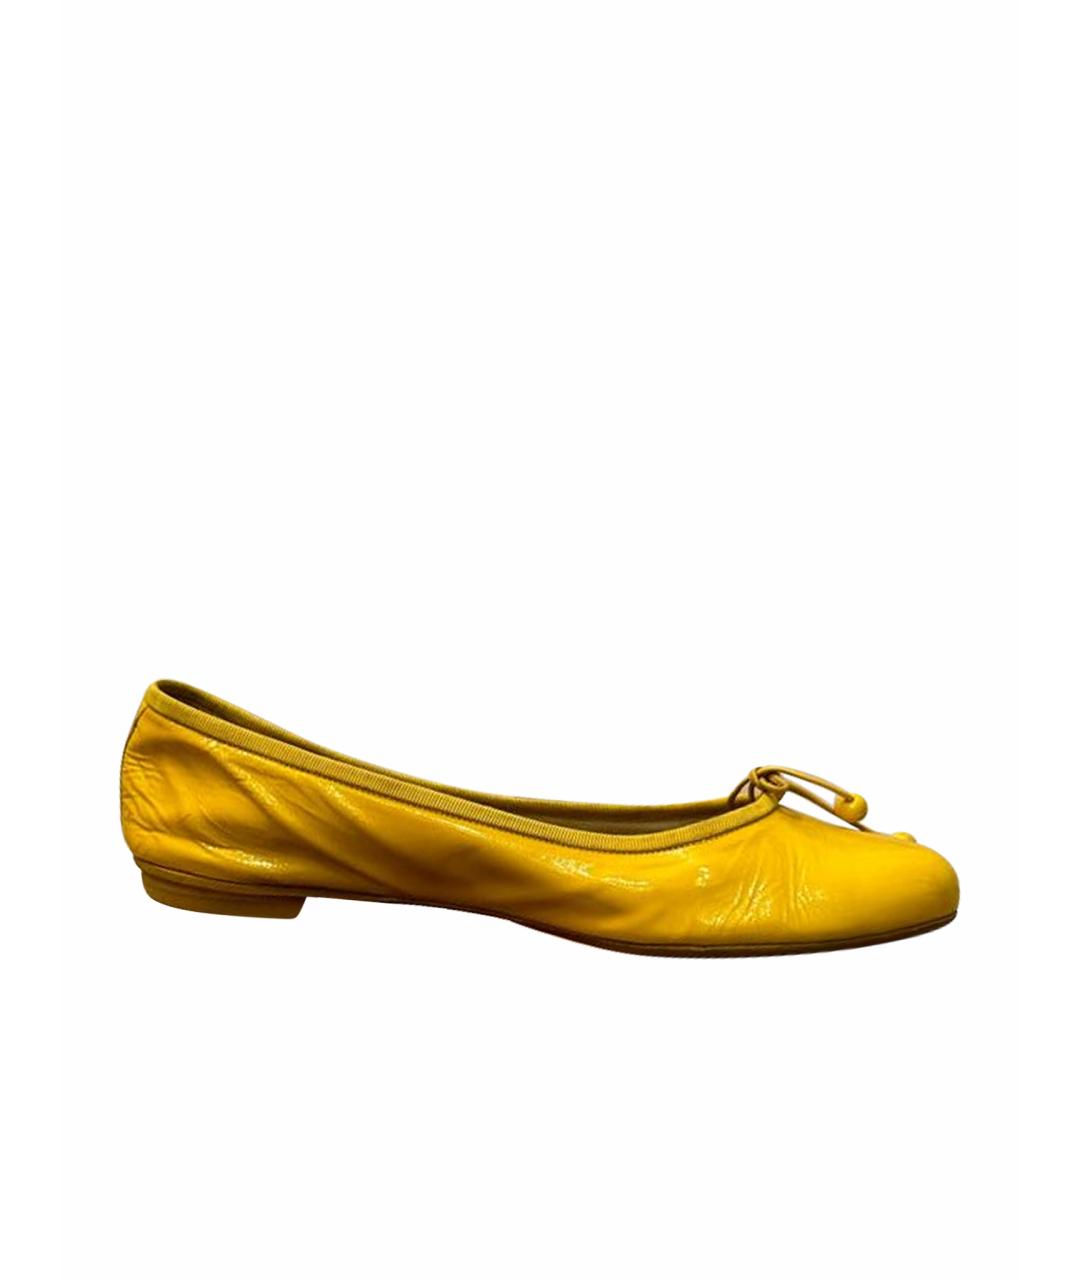 LOUIS VUITTON PRE-OWNED Желтые кожаные балетки, фото 1